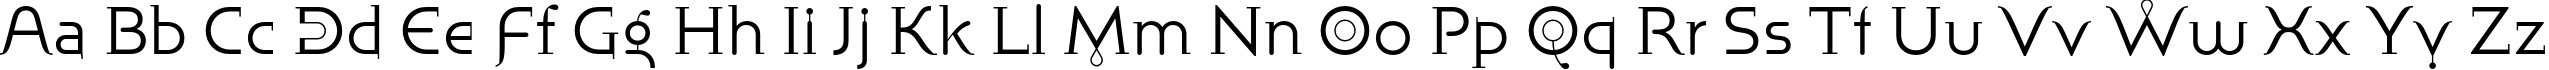 Пример написания английского алфавита шрифтом Bublik Light